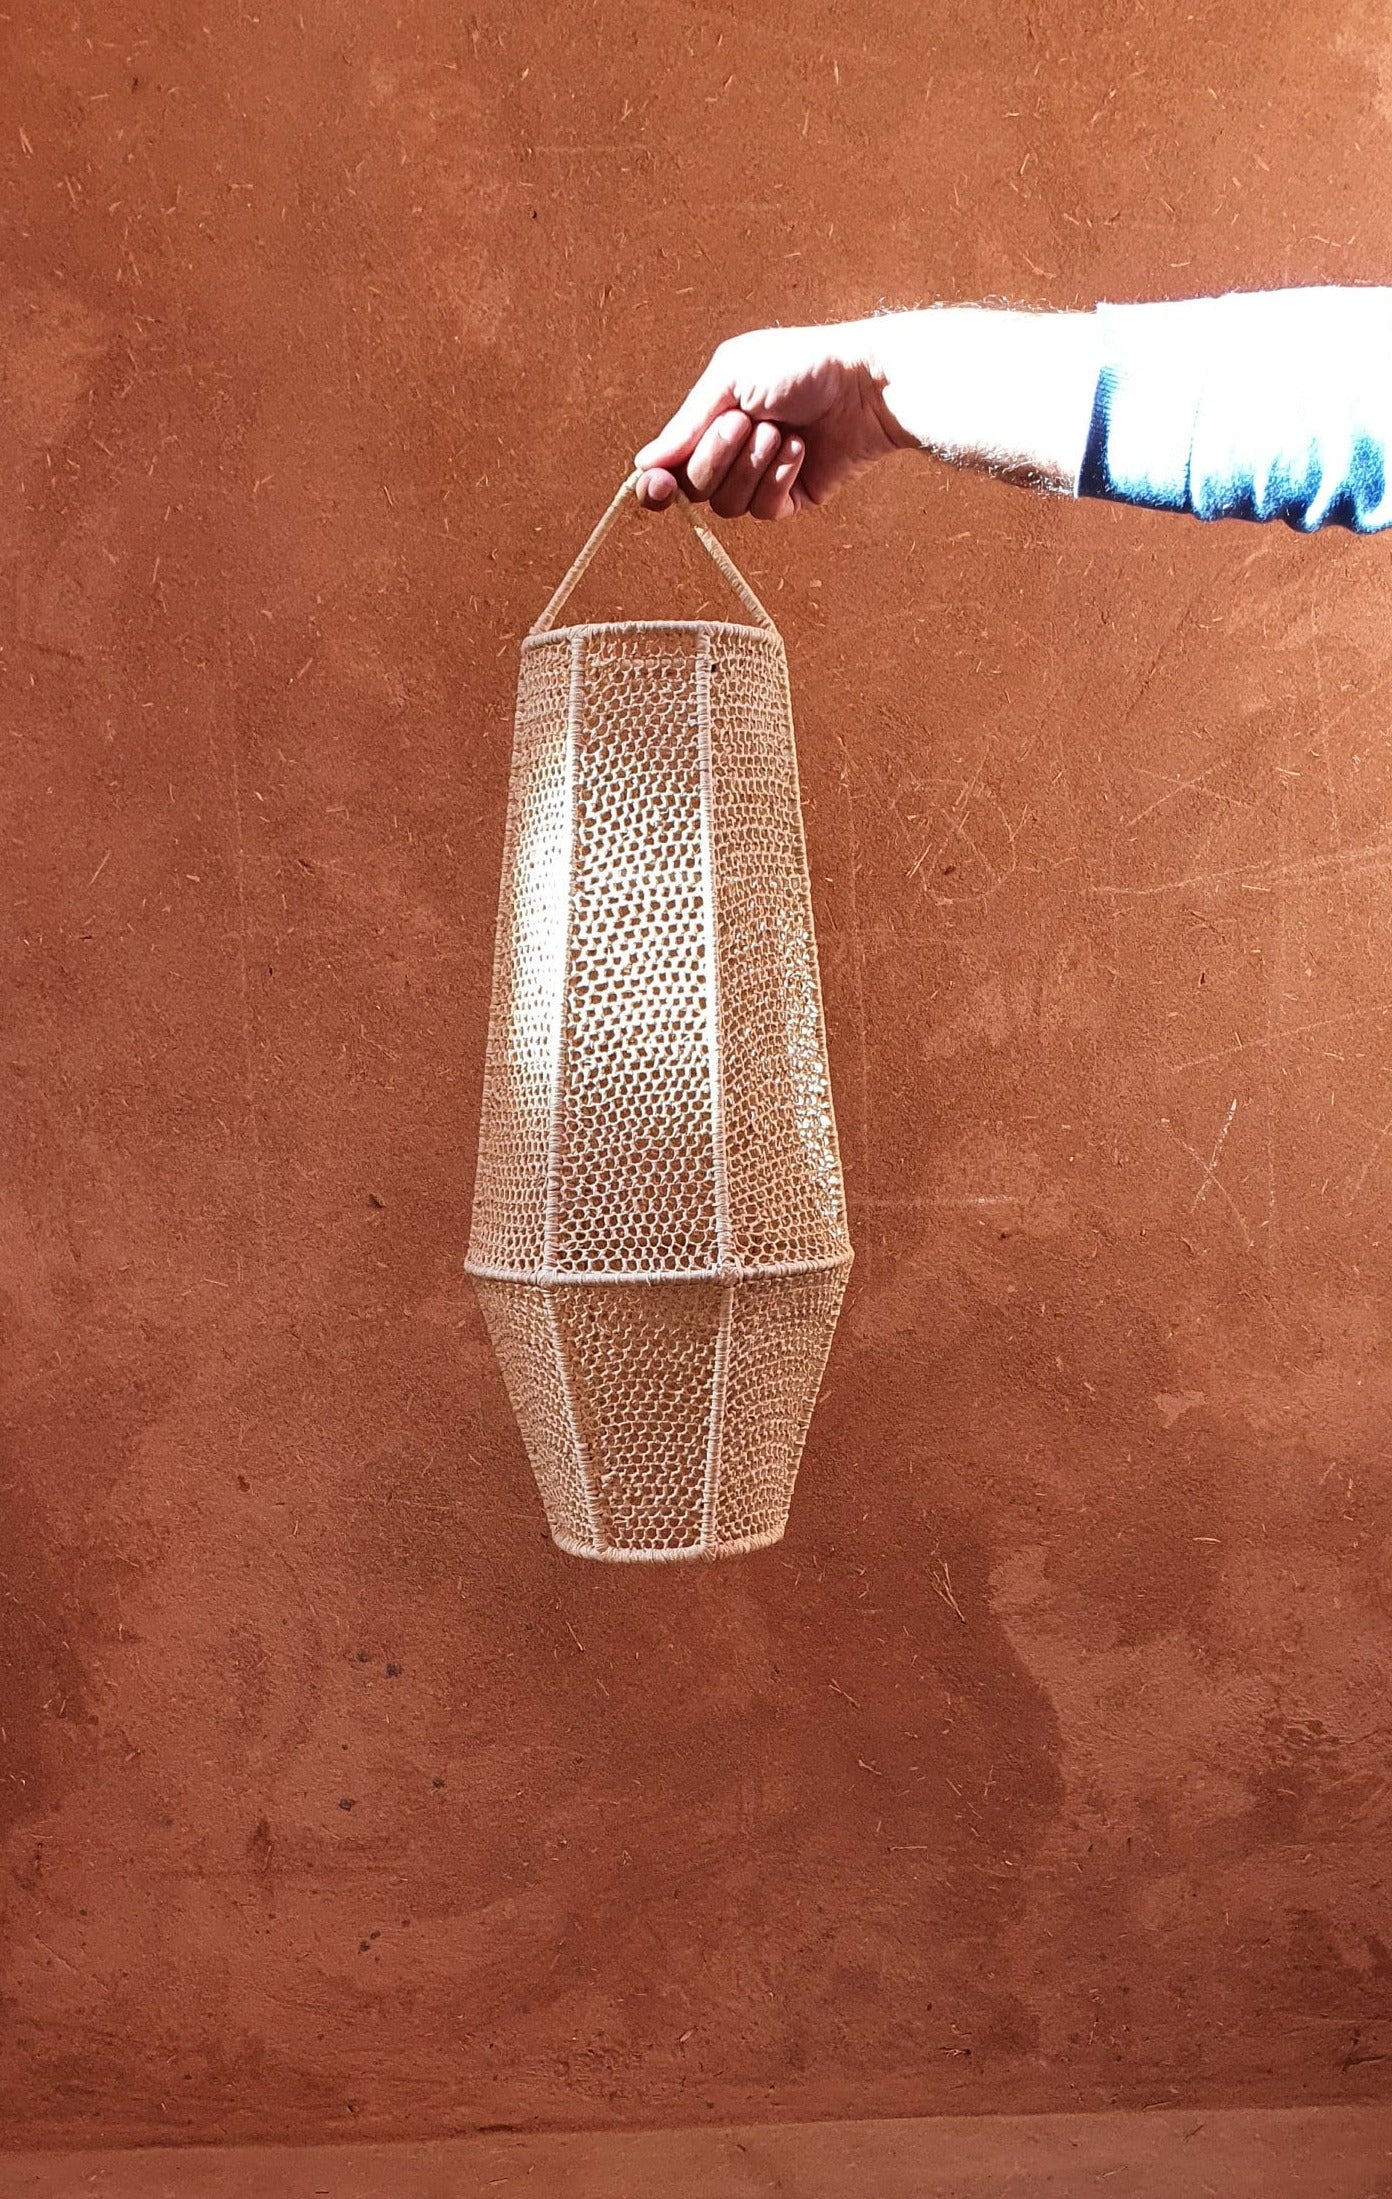 Suspension lanterne marocaine en raphia avec détails de dentelle.